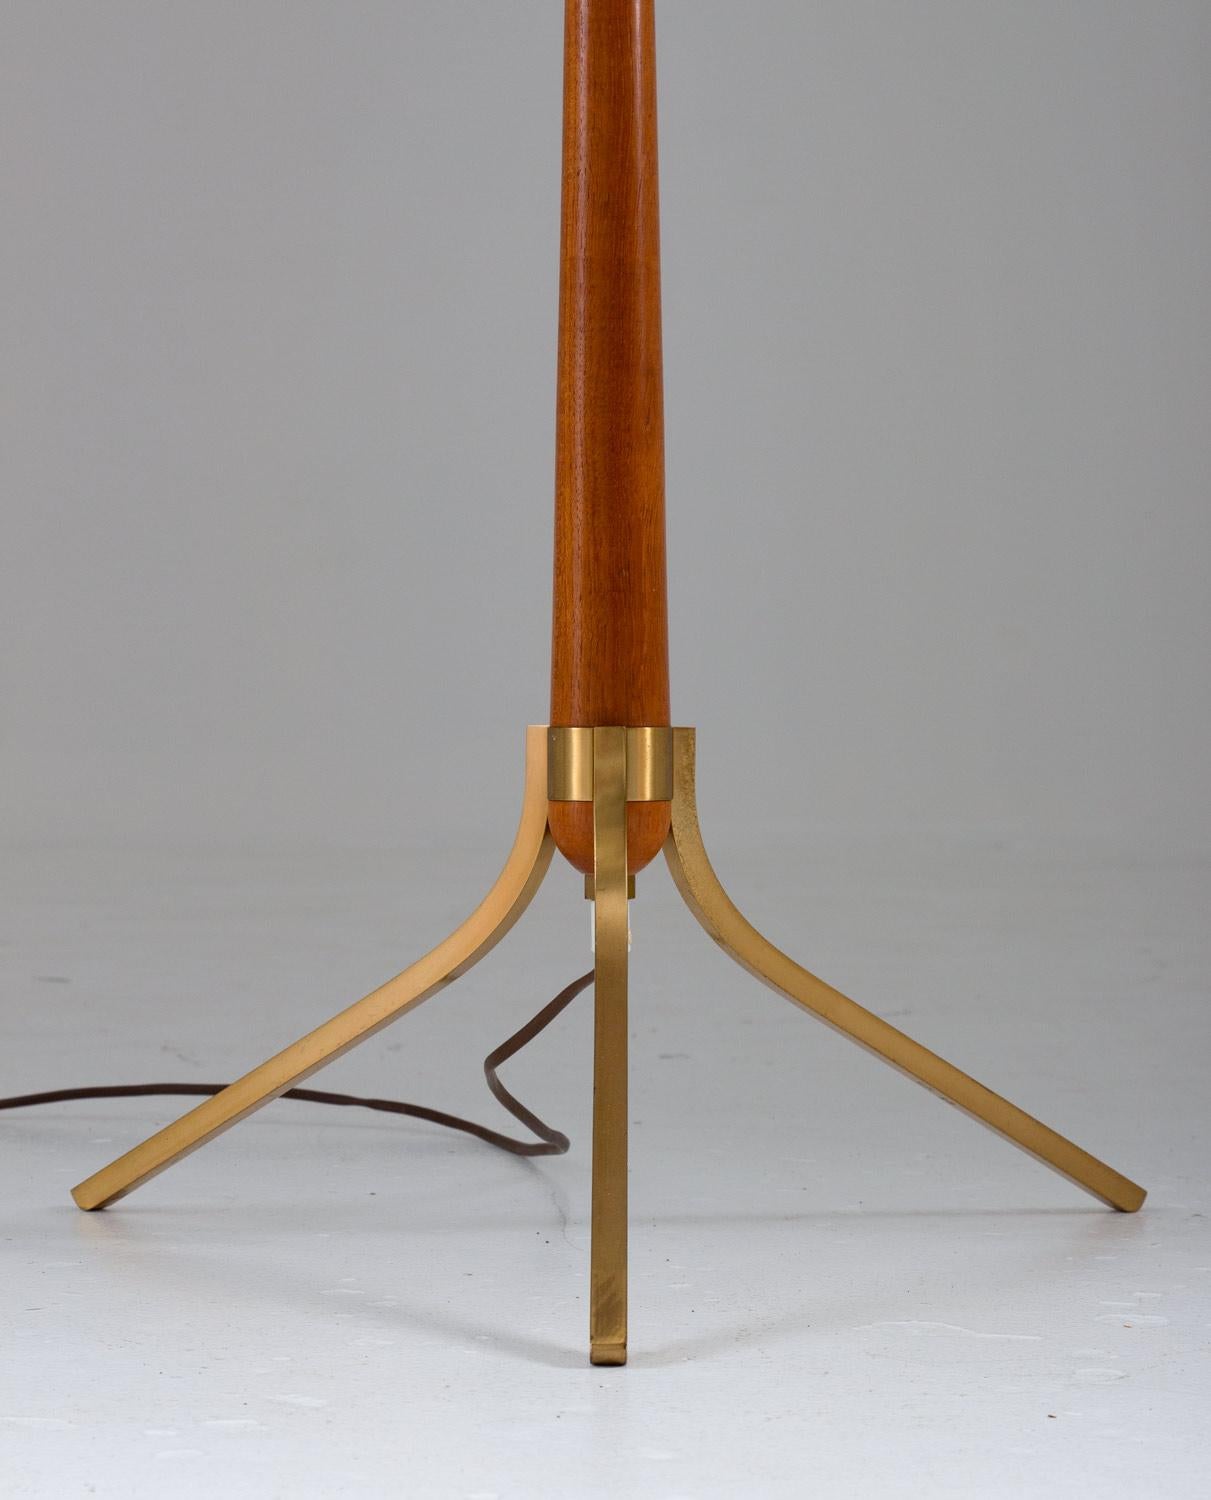 20th Century Scandinavian Midcentury Floor Lamps in Brass and Wood